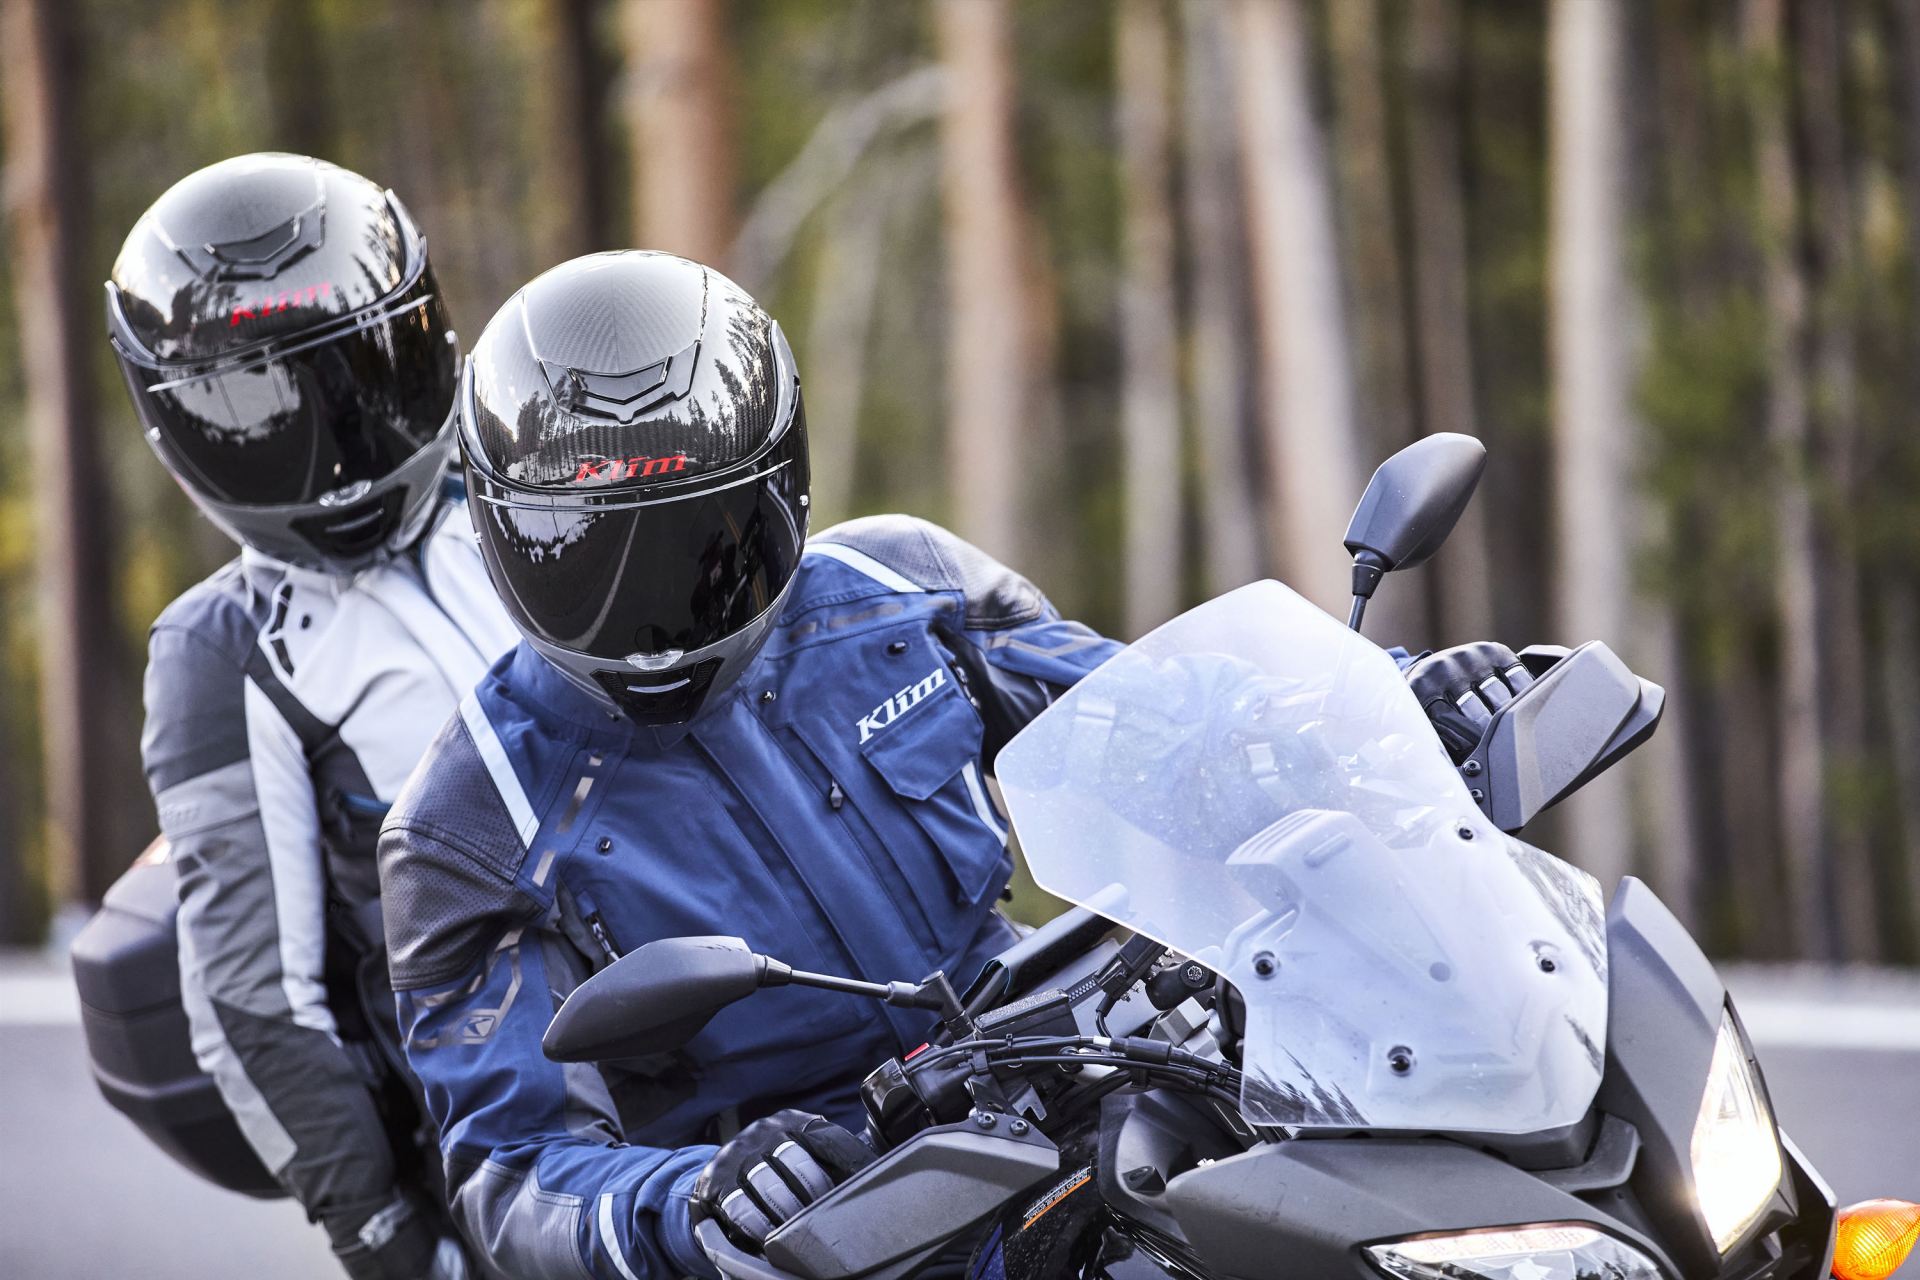 KLIM Motorradbekleidung: Sicherheit und Komfort auf höchstem Niveau!